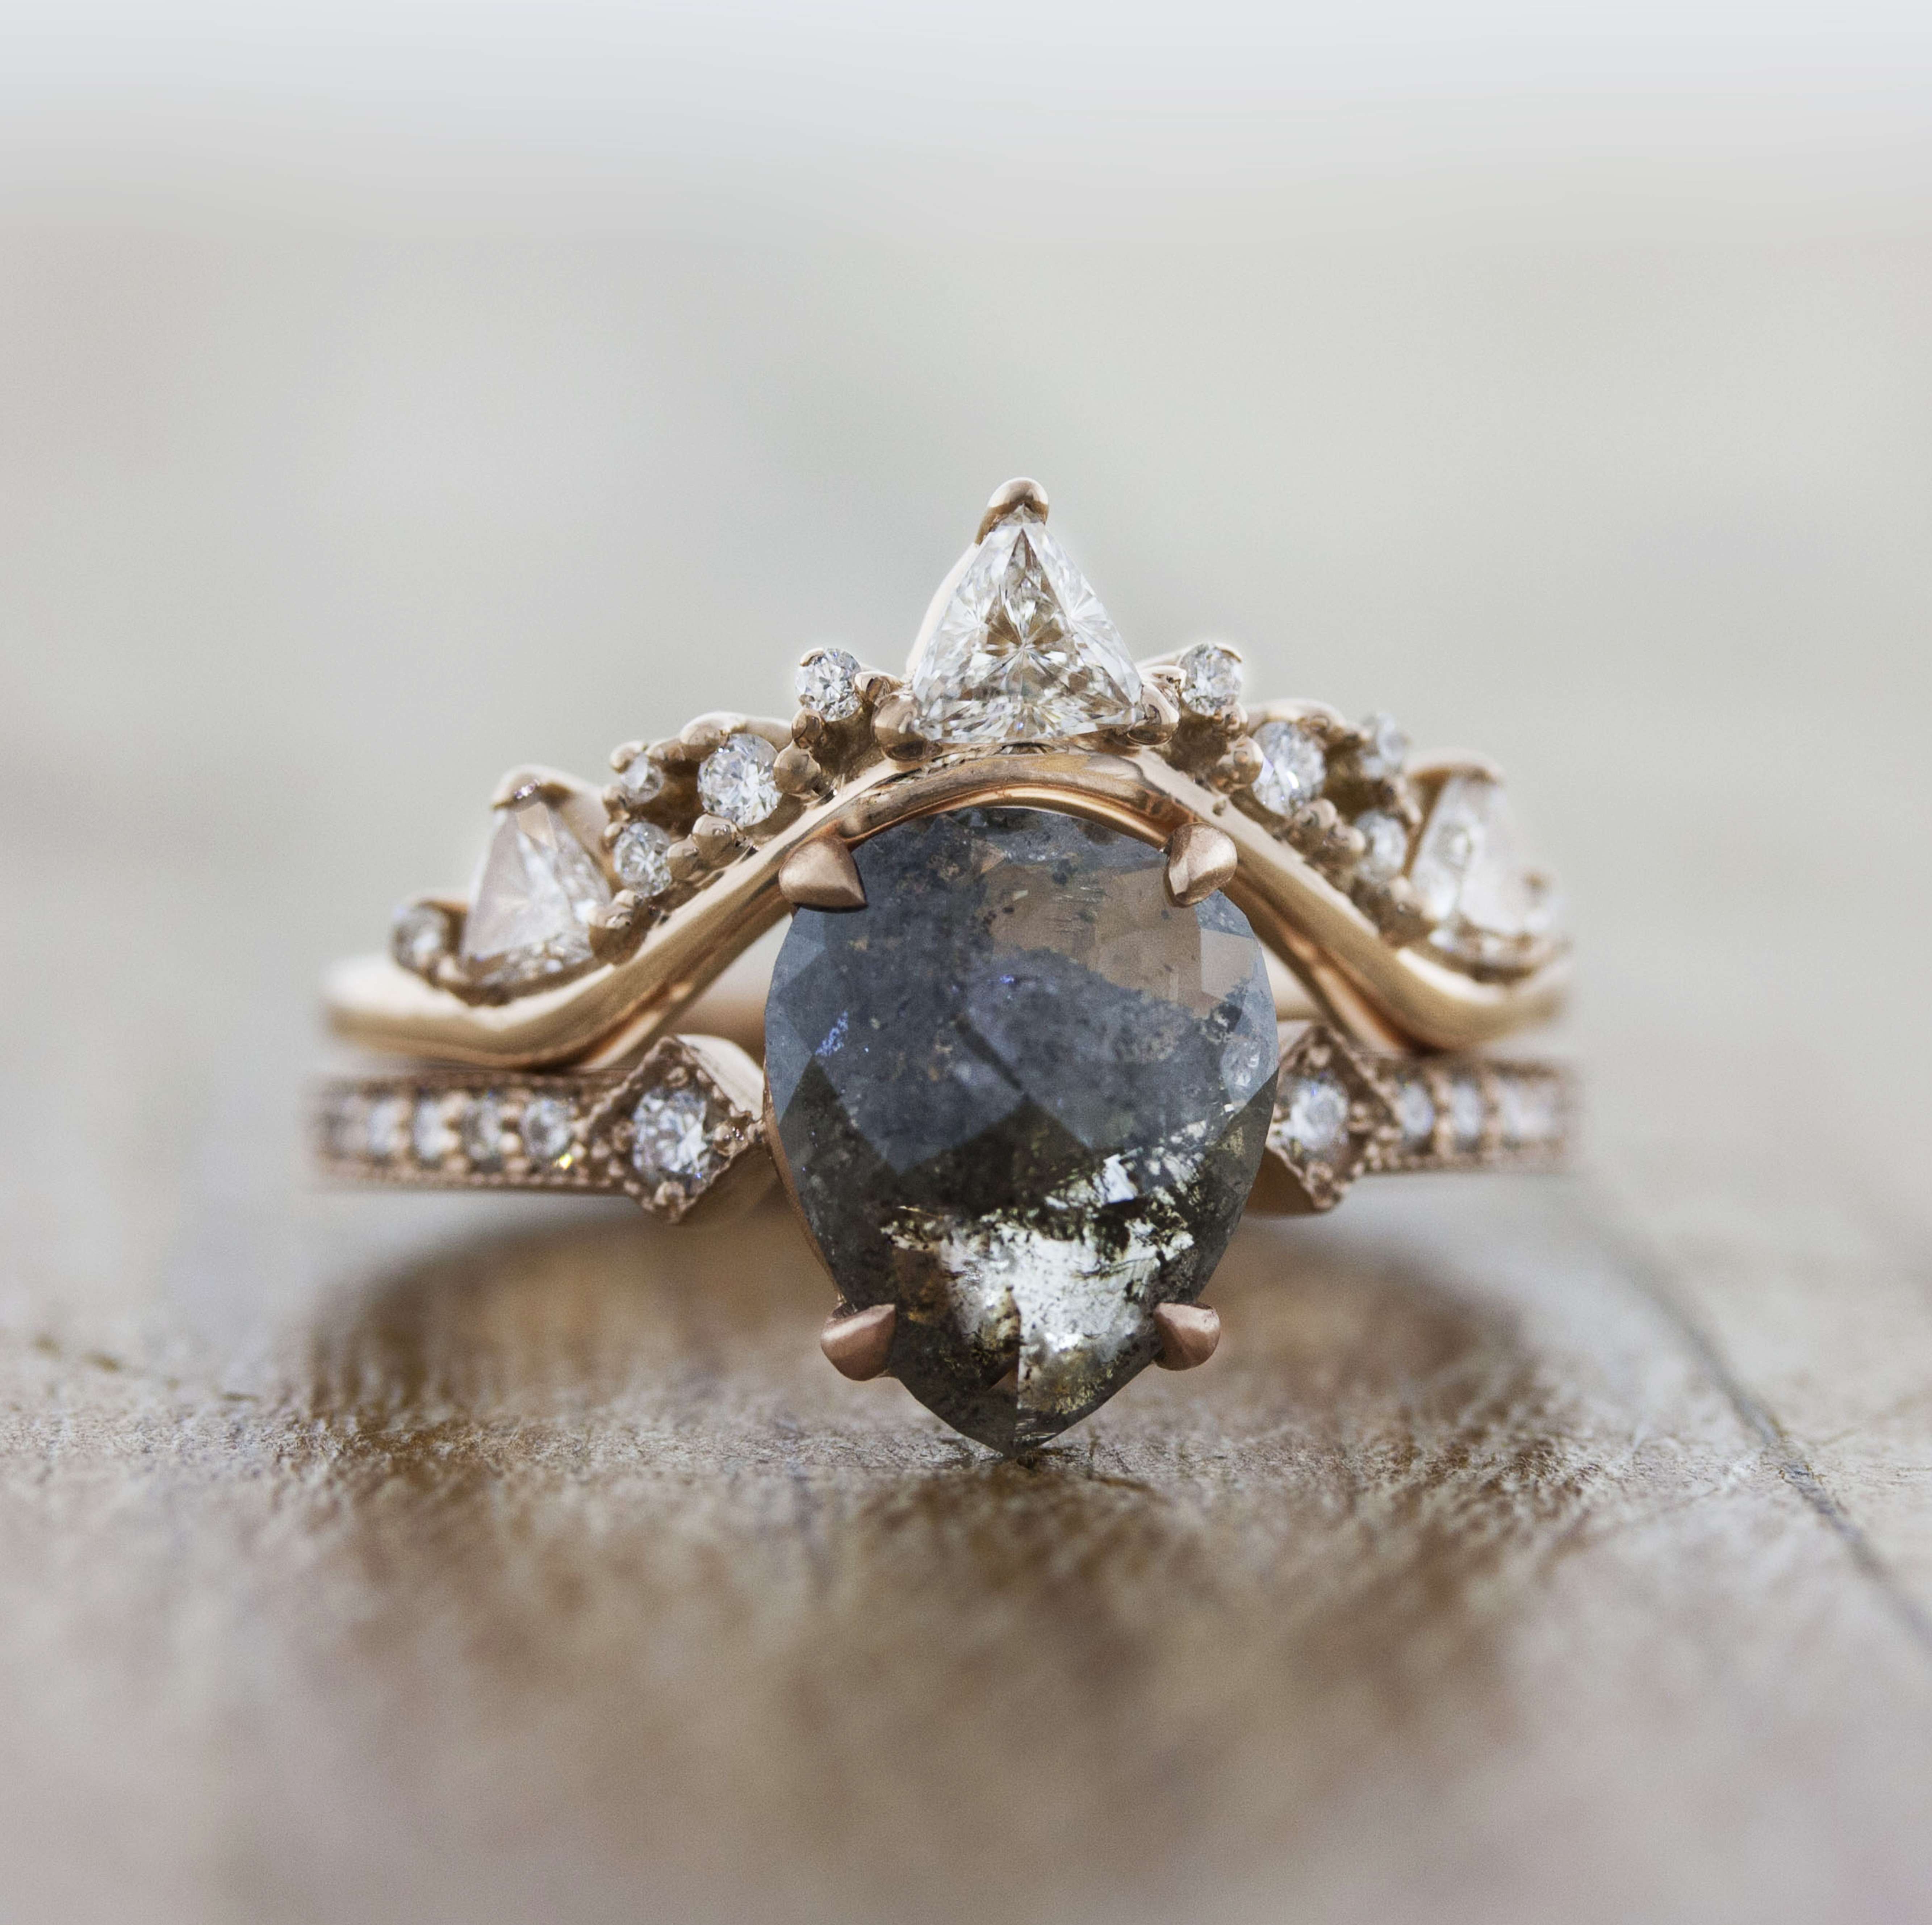 Jewelry Pictures: Free Stock Photos of Elegant Jewellery